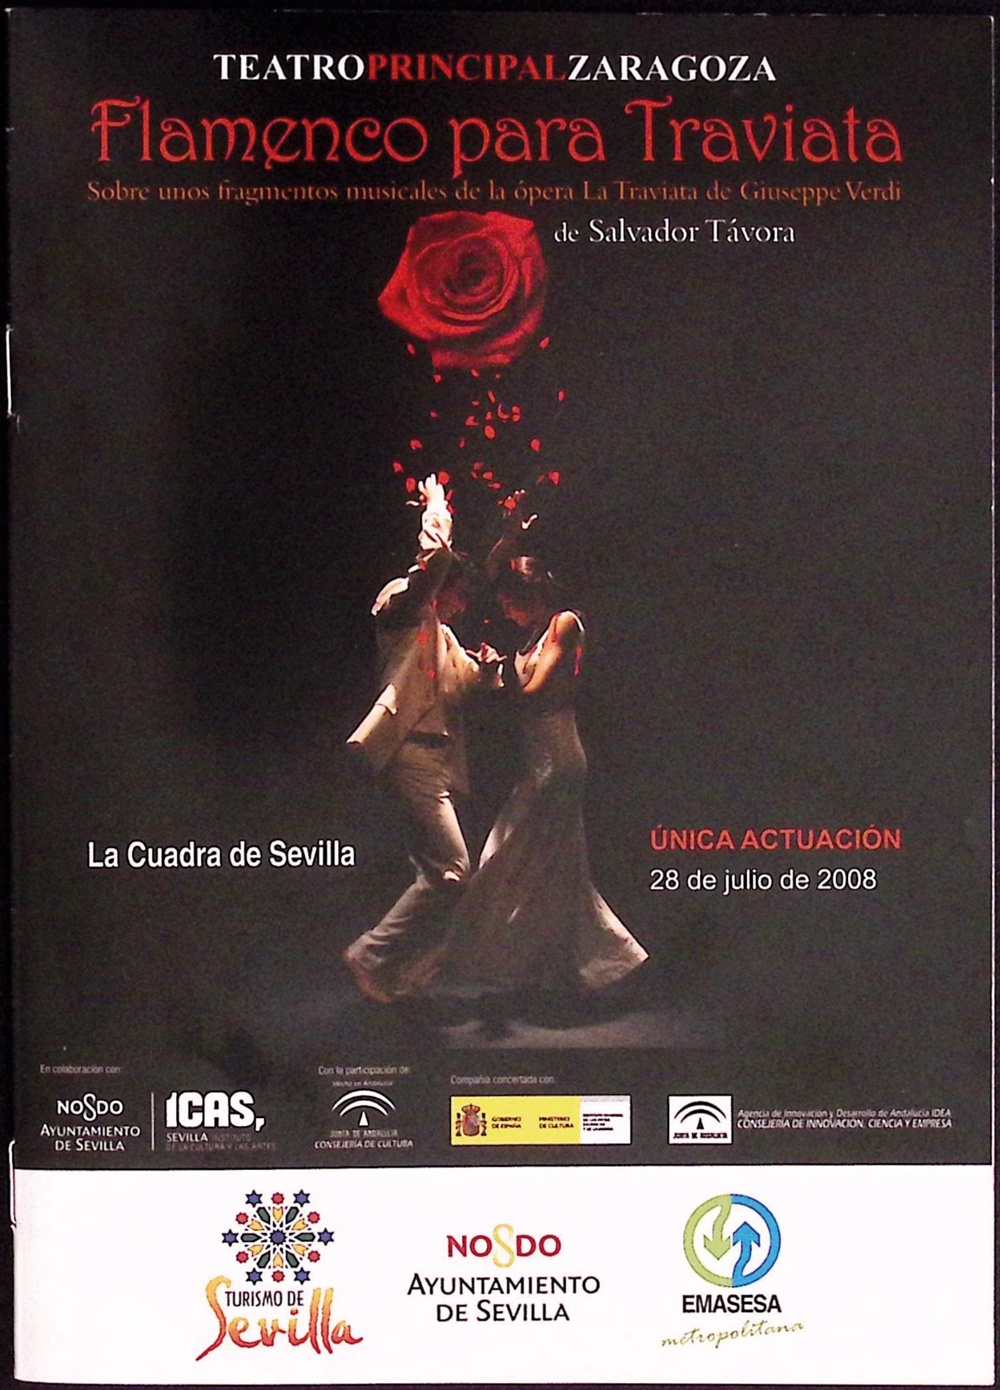 Flamenco para Traviata de Salvador Távora. Sobre unos fragmentos musicales de la ópera La Traviata de Giuseppe Verdi. La Cuadra de Sevilla